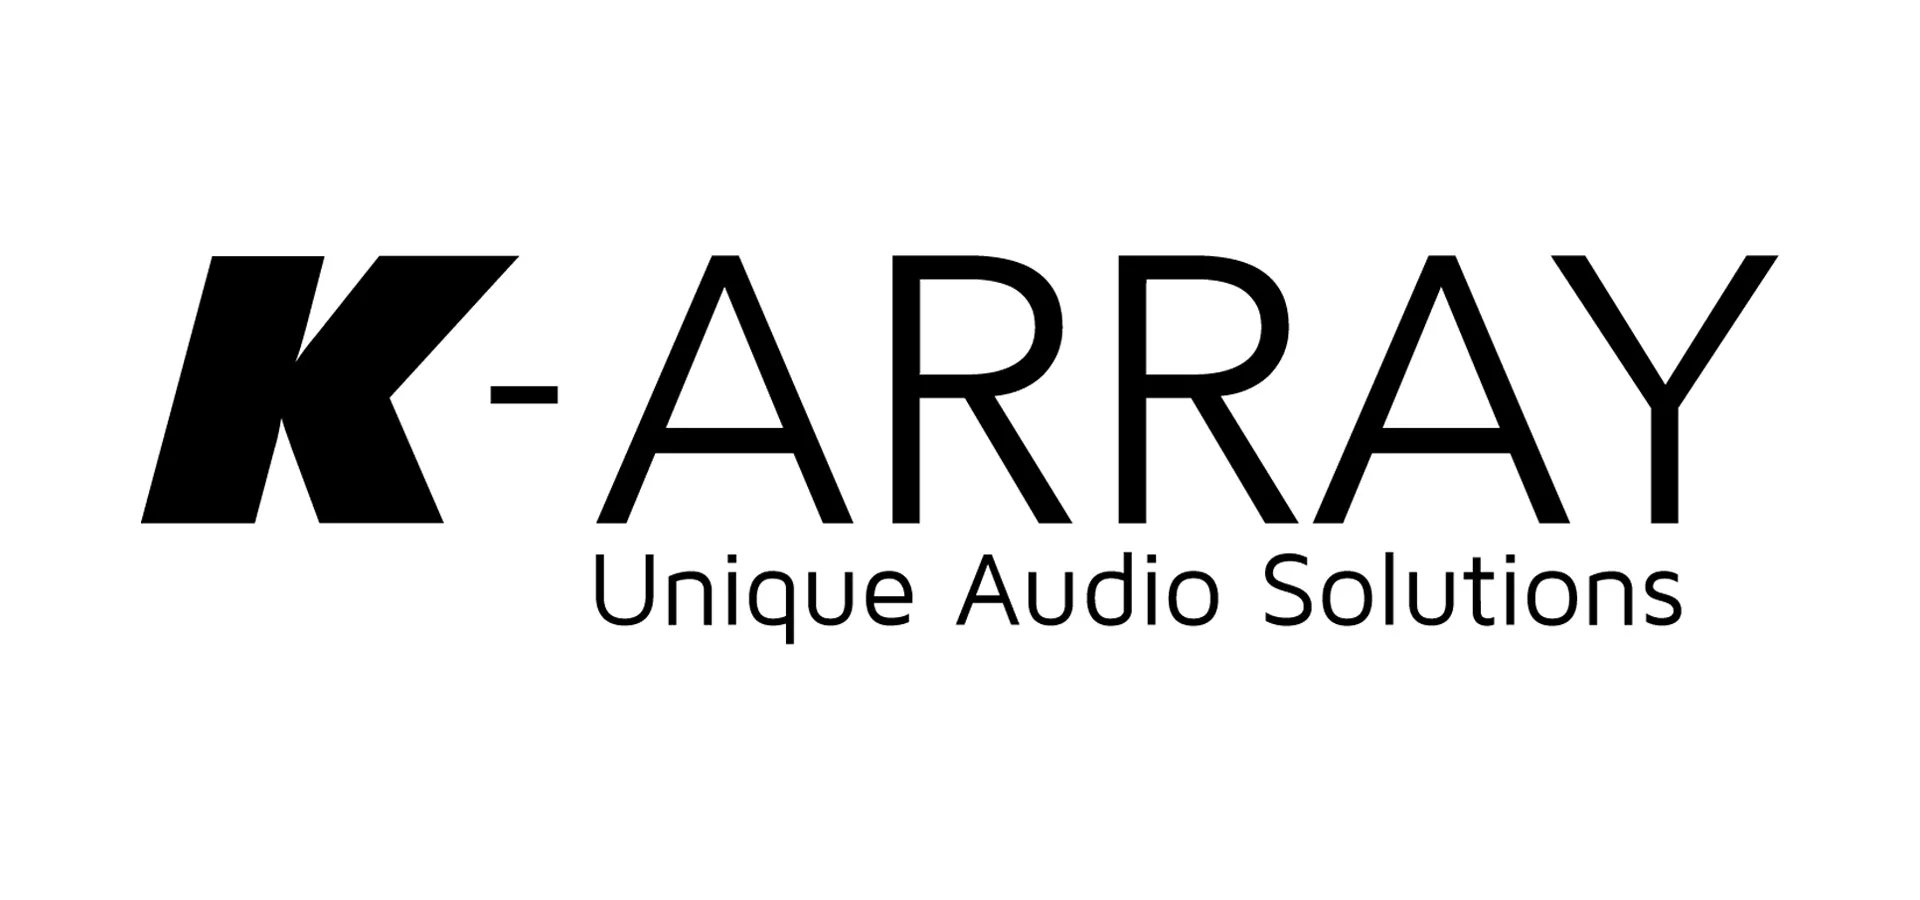 K-ARRAY UNIQUE AUDIO SOLUTIONS